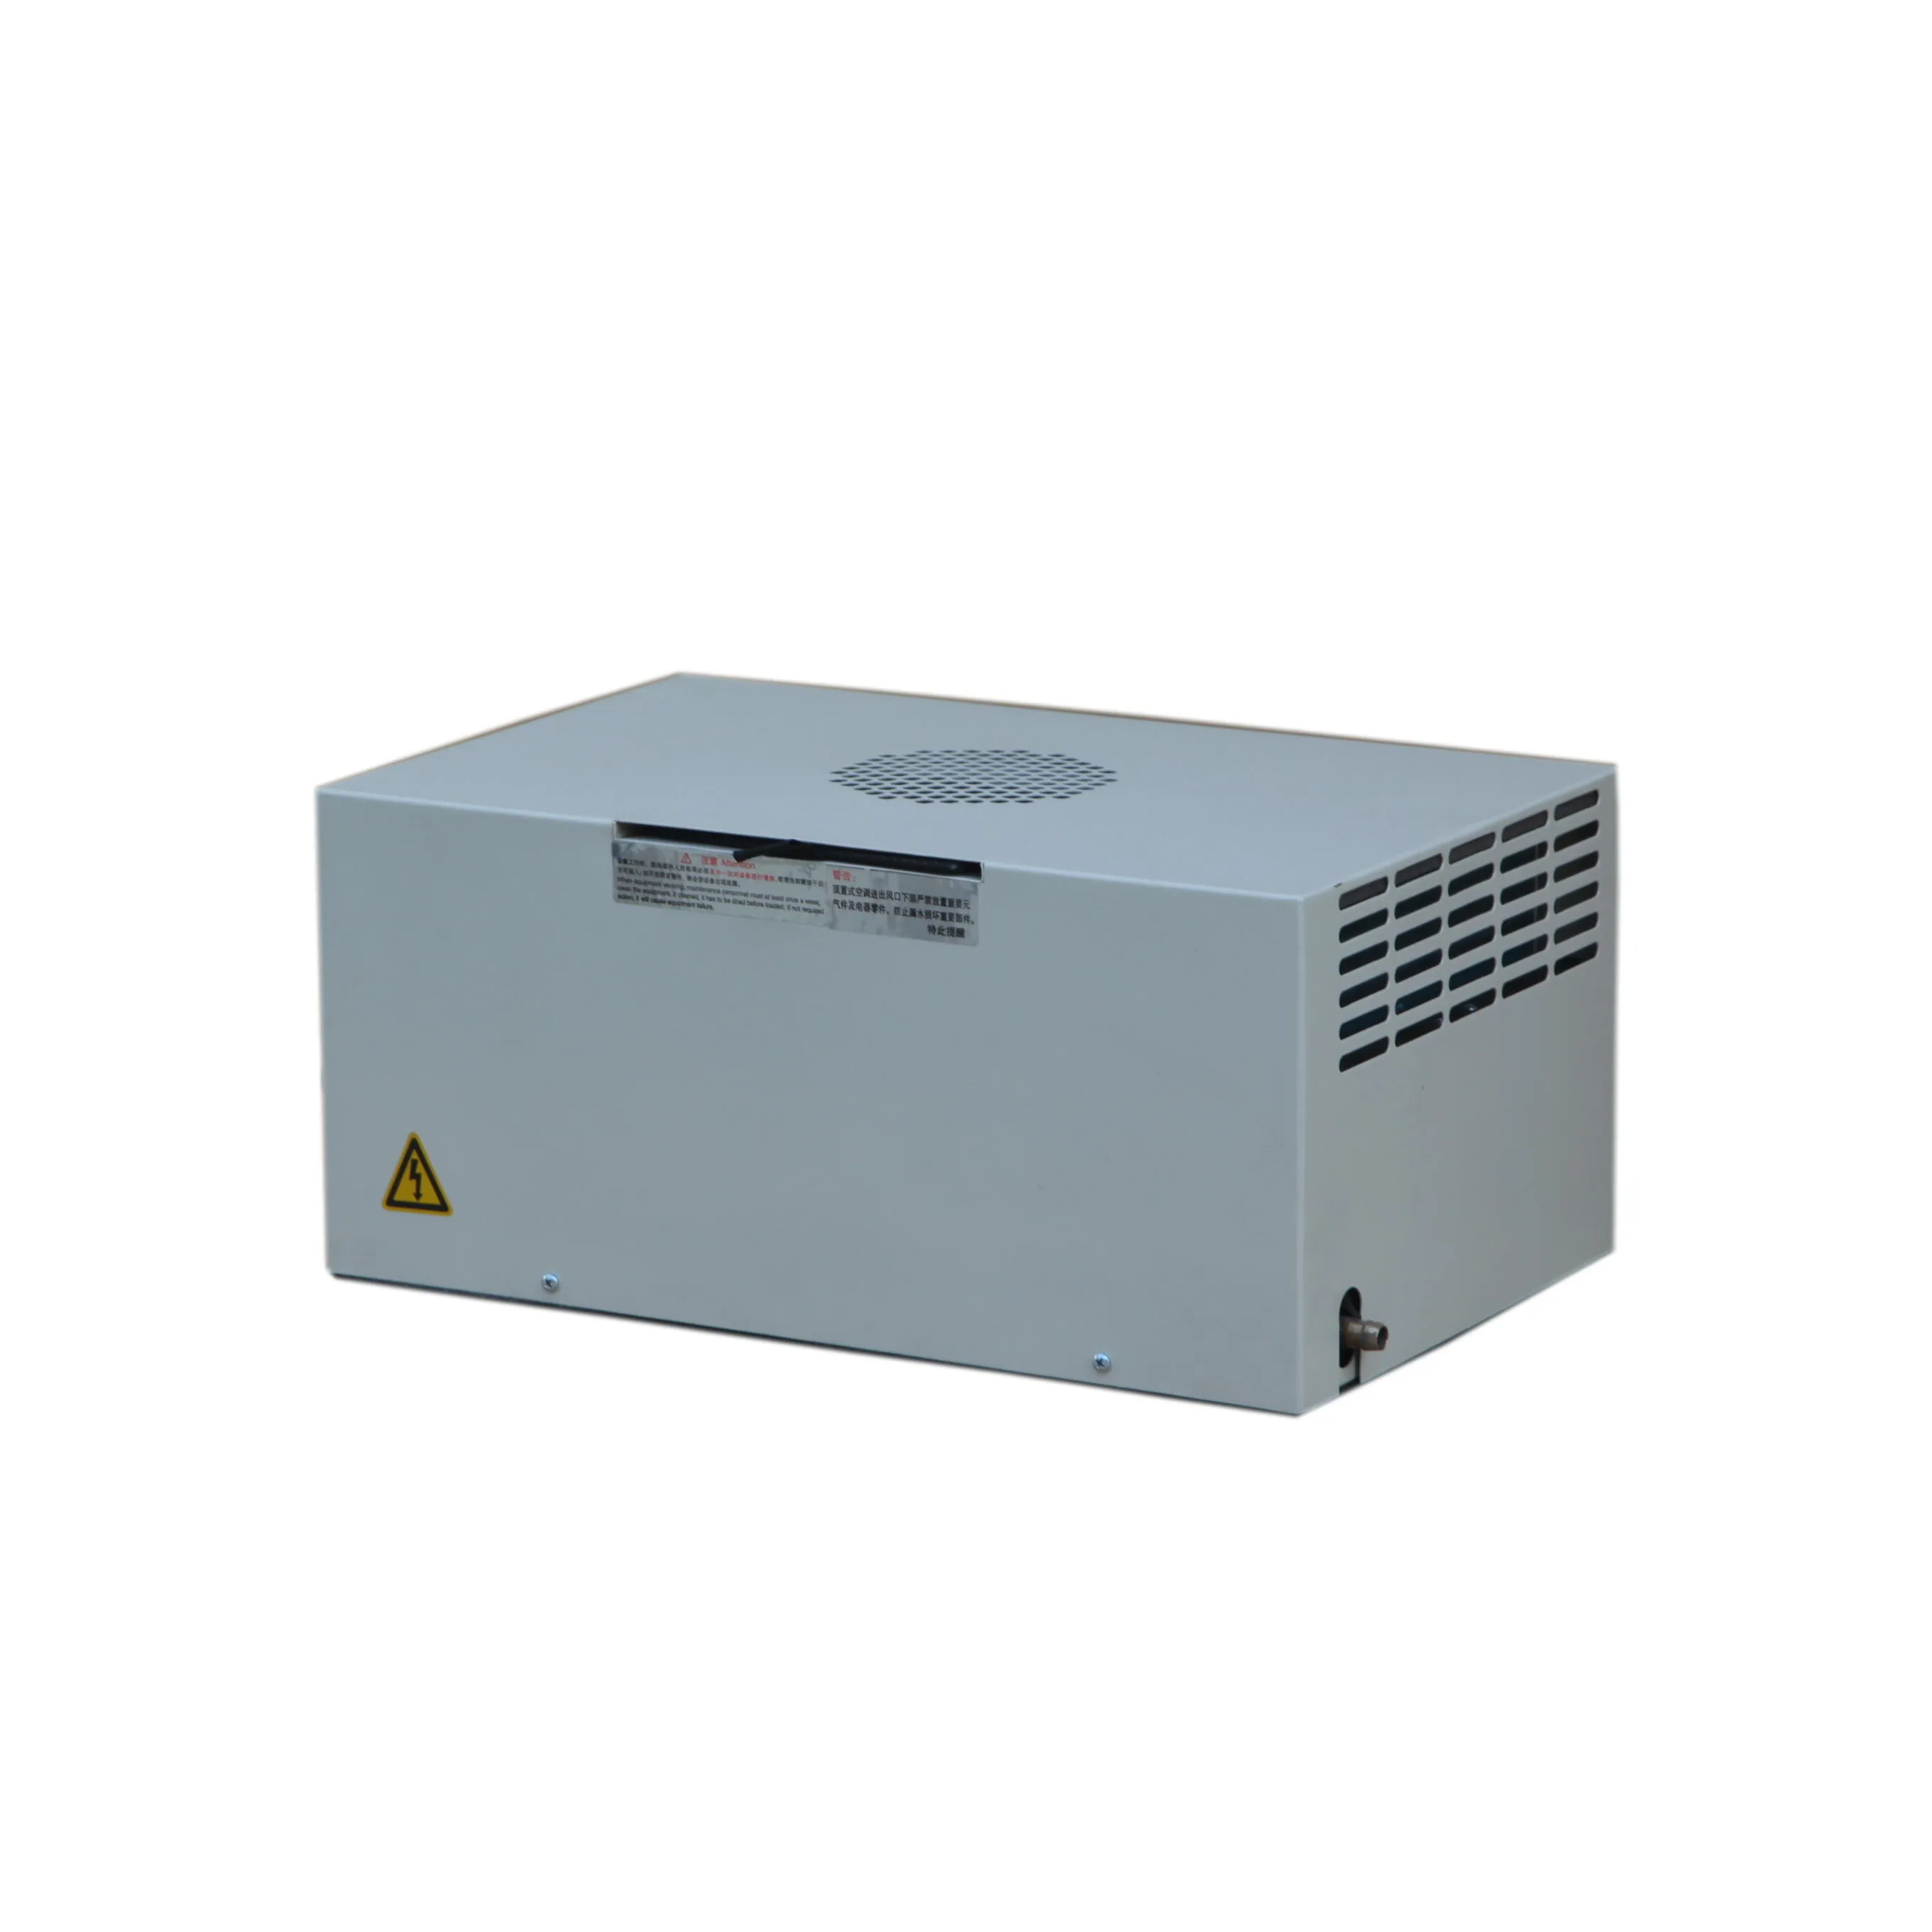 DEA-600 industrial rooftop cabinet Air Conditioner